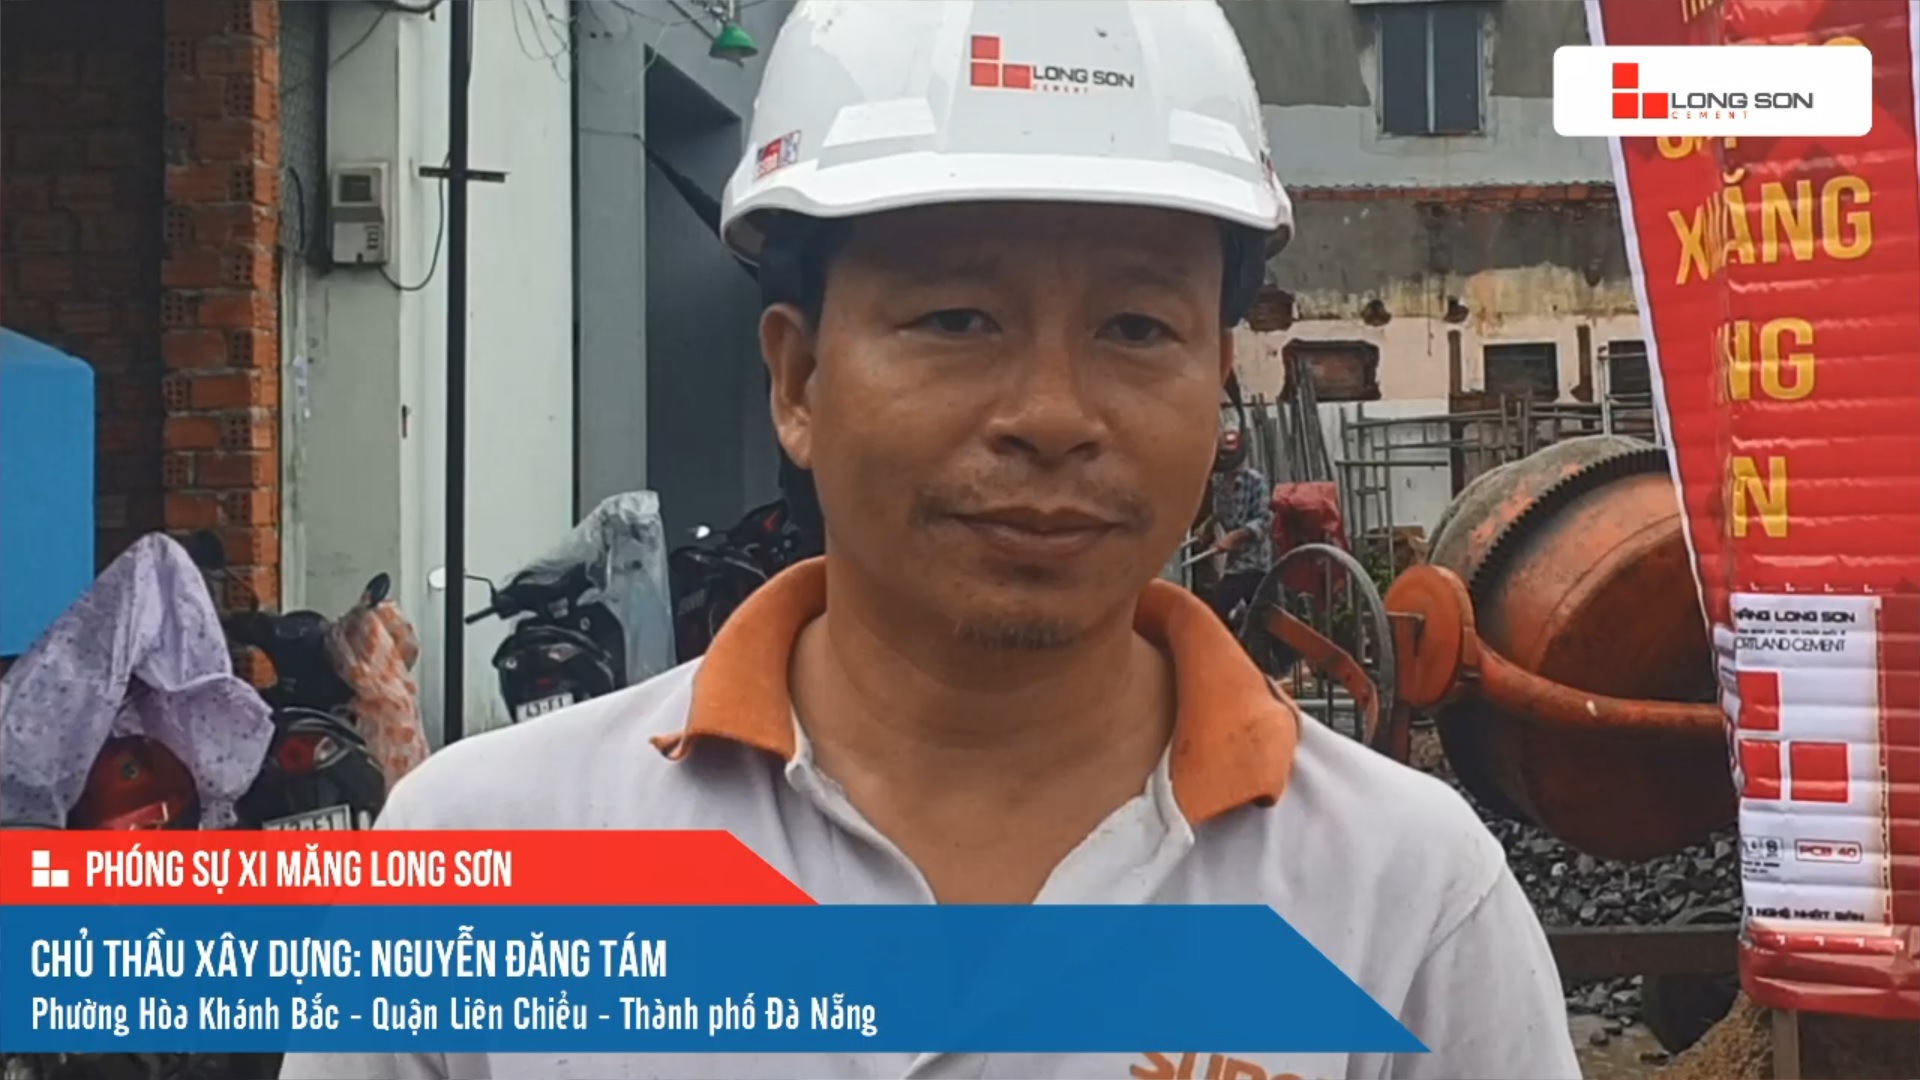 Phóng sự công trình sử dụng xi măng Long Sơn tại Đà Nẵng ngày 19/10/2021